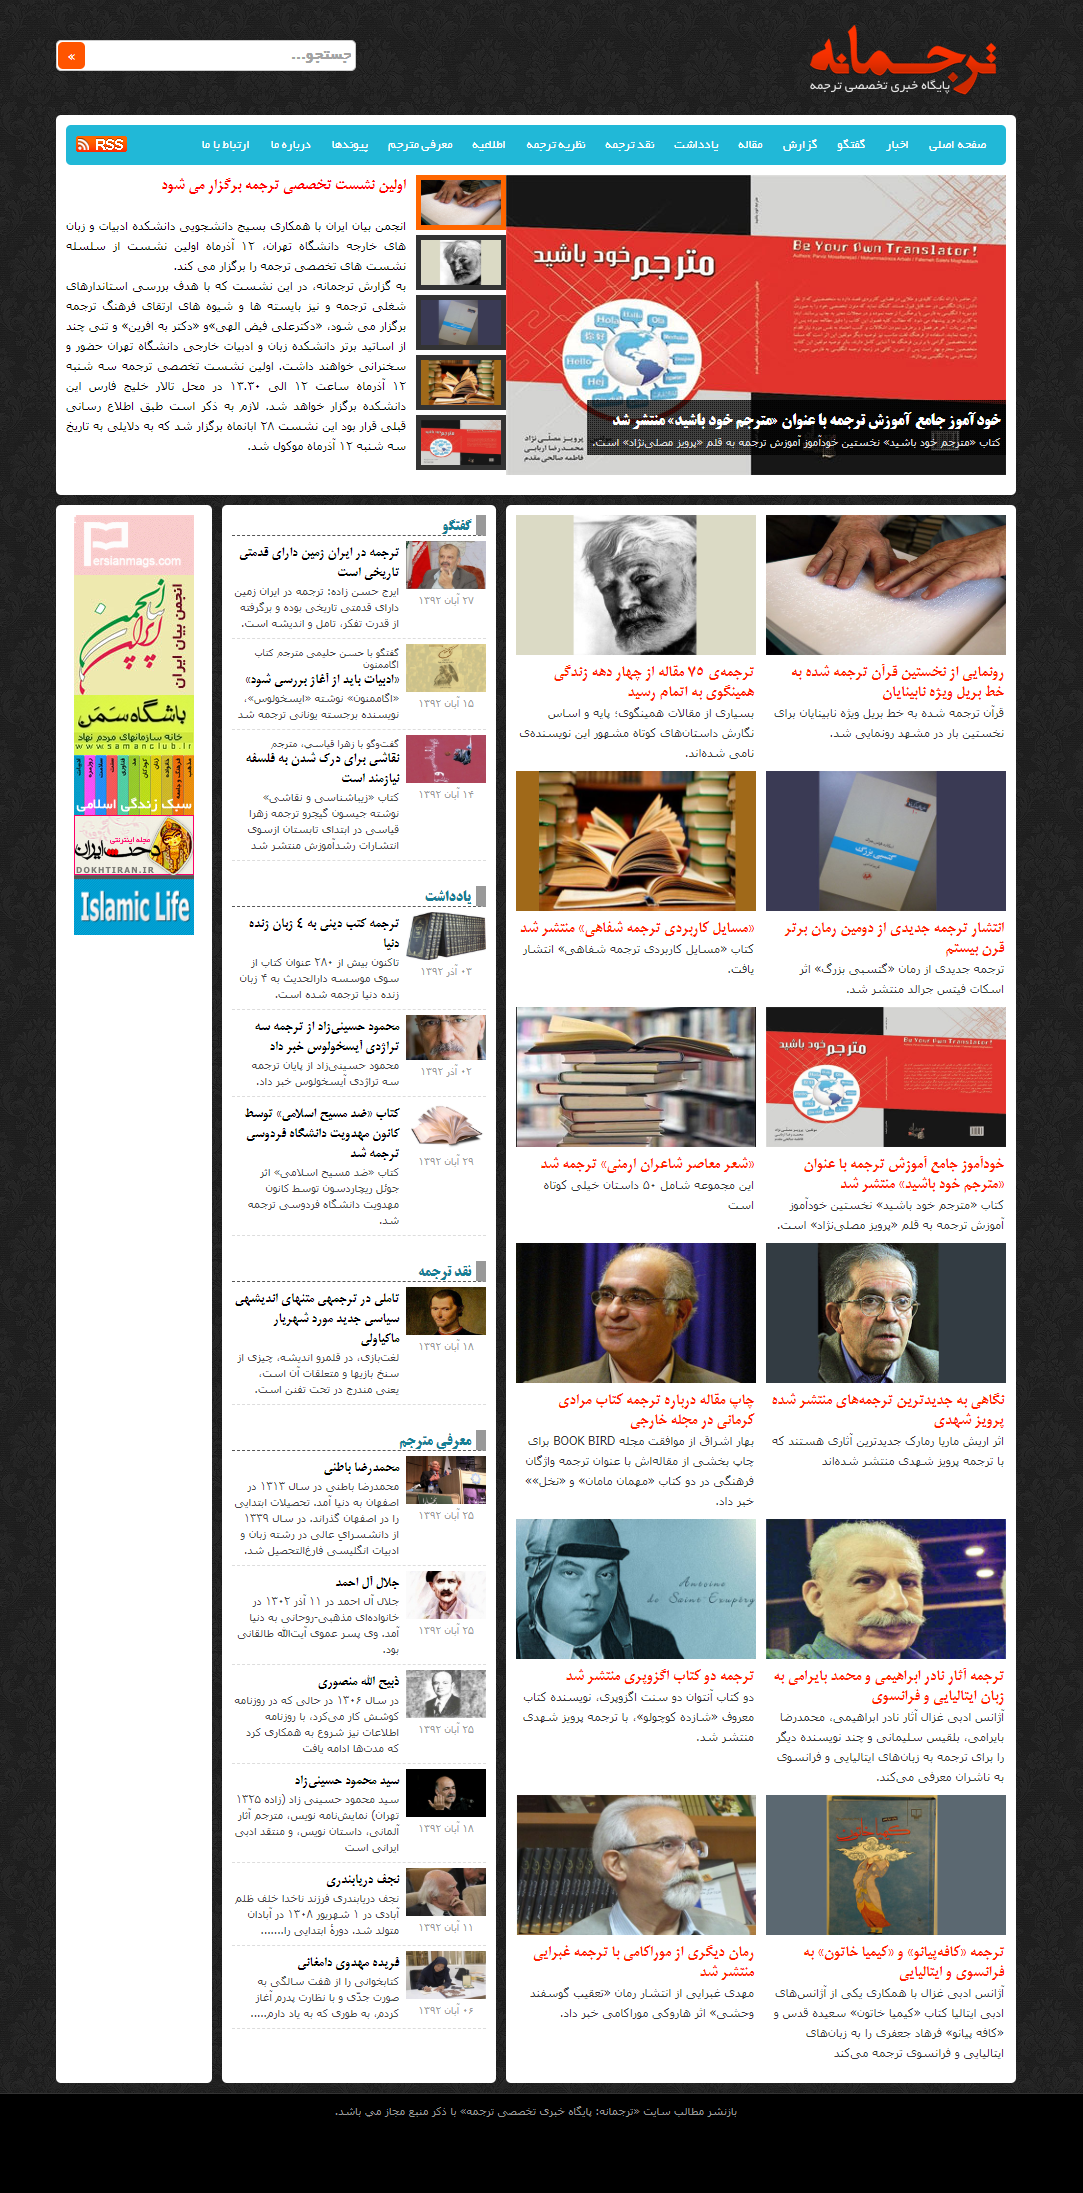 طراحی سایت خبری تخصصی ترجمانه